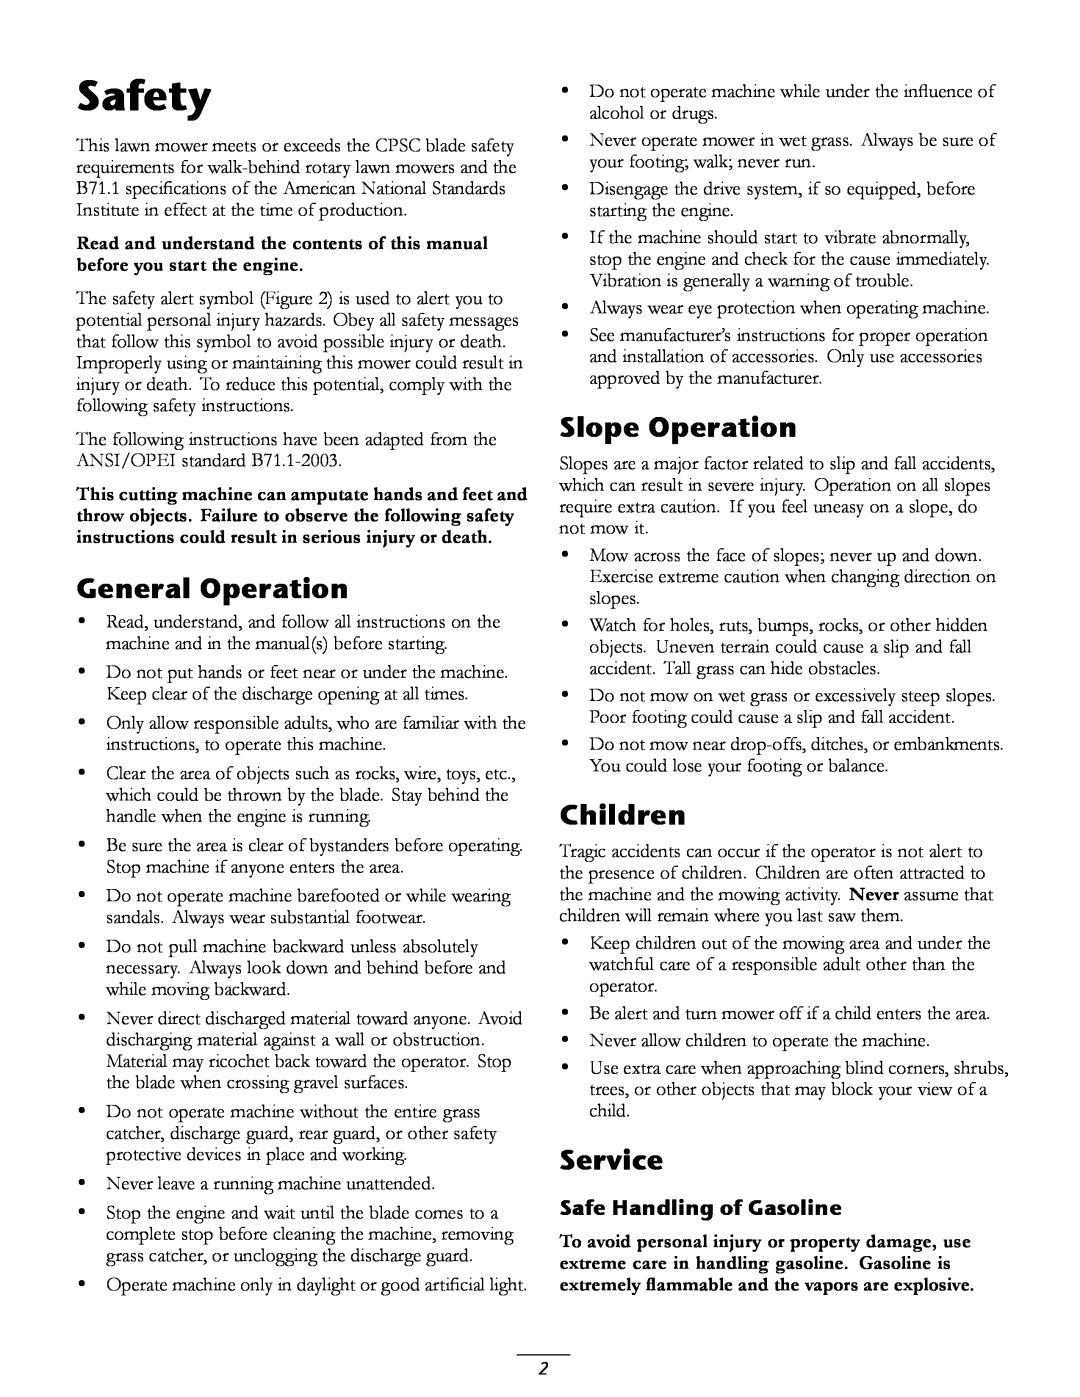 Toro 20067, 20066 manual Safety, General Operation, Slope Operation, Children, Service, Safe Handling of Gasoline 